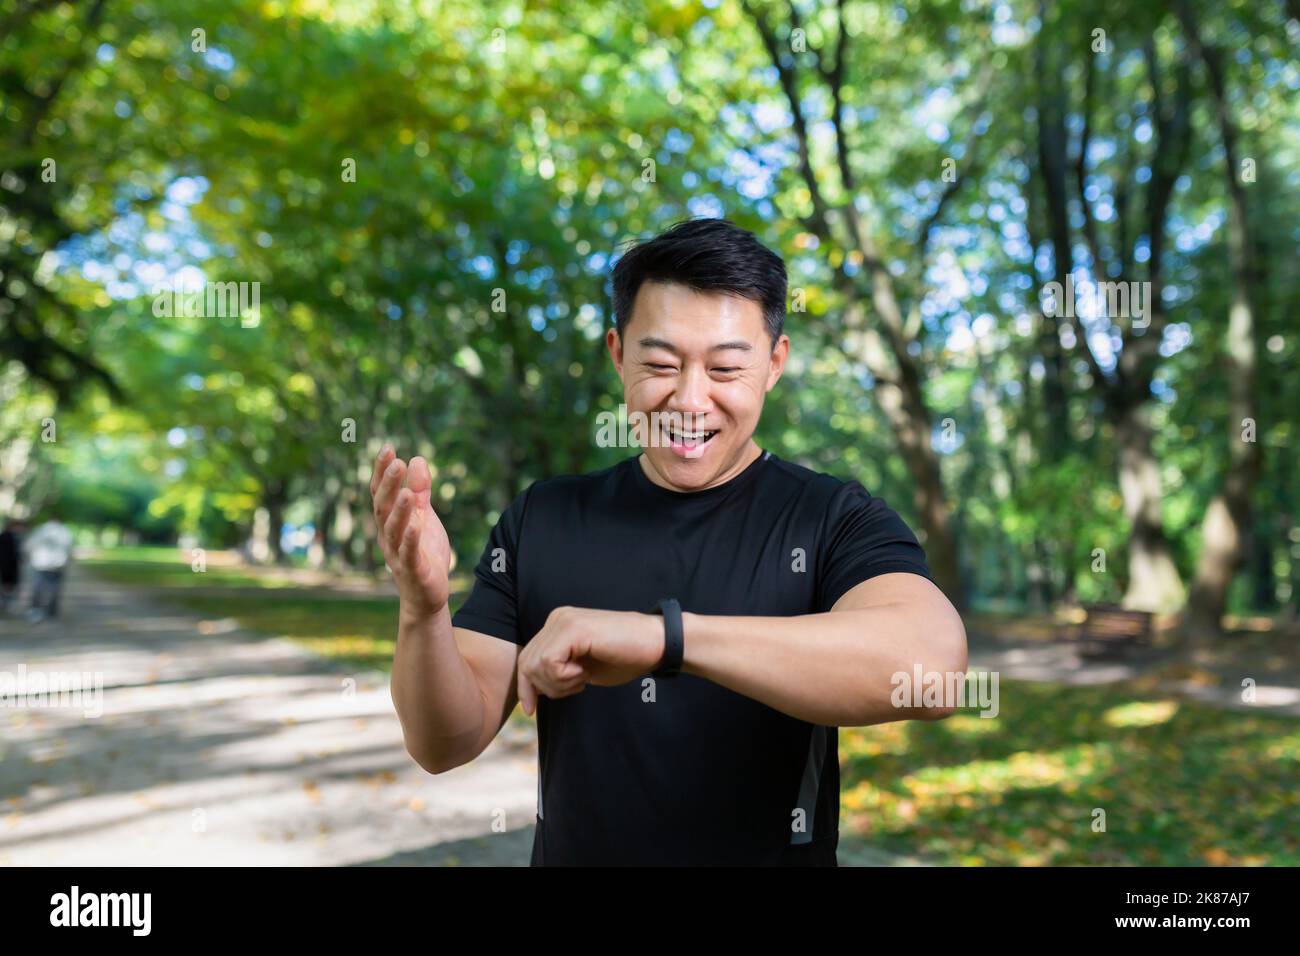 Sport kaukasischen Mann suchen Smart Uhr bei modernen Streckenläufer mit Smartwatch Fitness-Armband verwenden Portrait fit männlichen Athleten Überprüfung Ergebnis Joggen in Sportbekleidung auf der Straße städtischen Stadtpark im Freien Stockfoto